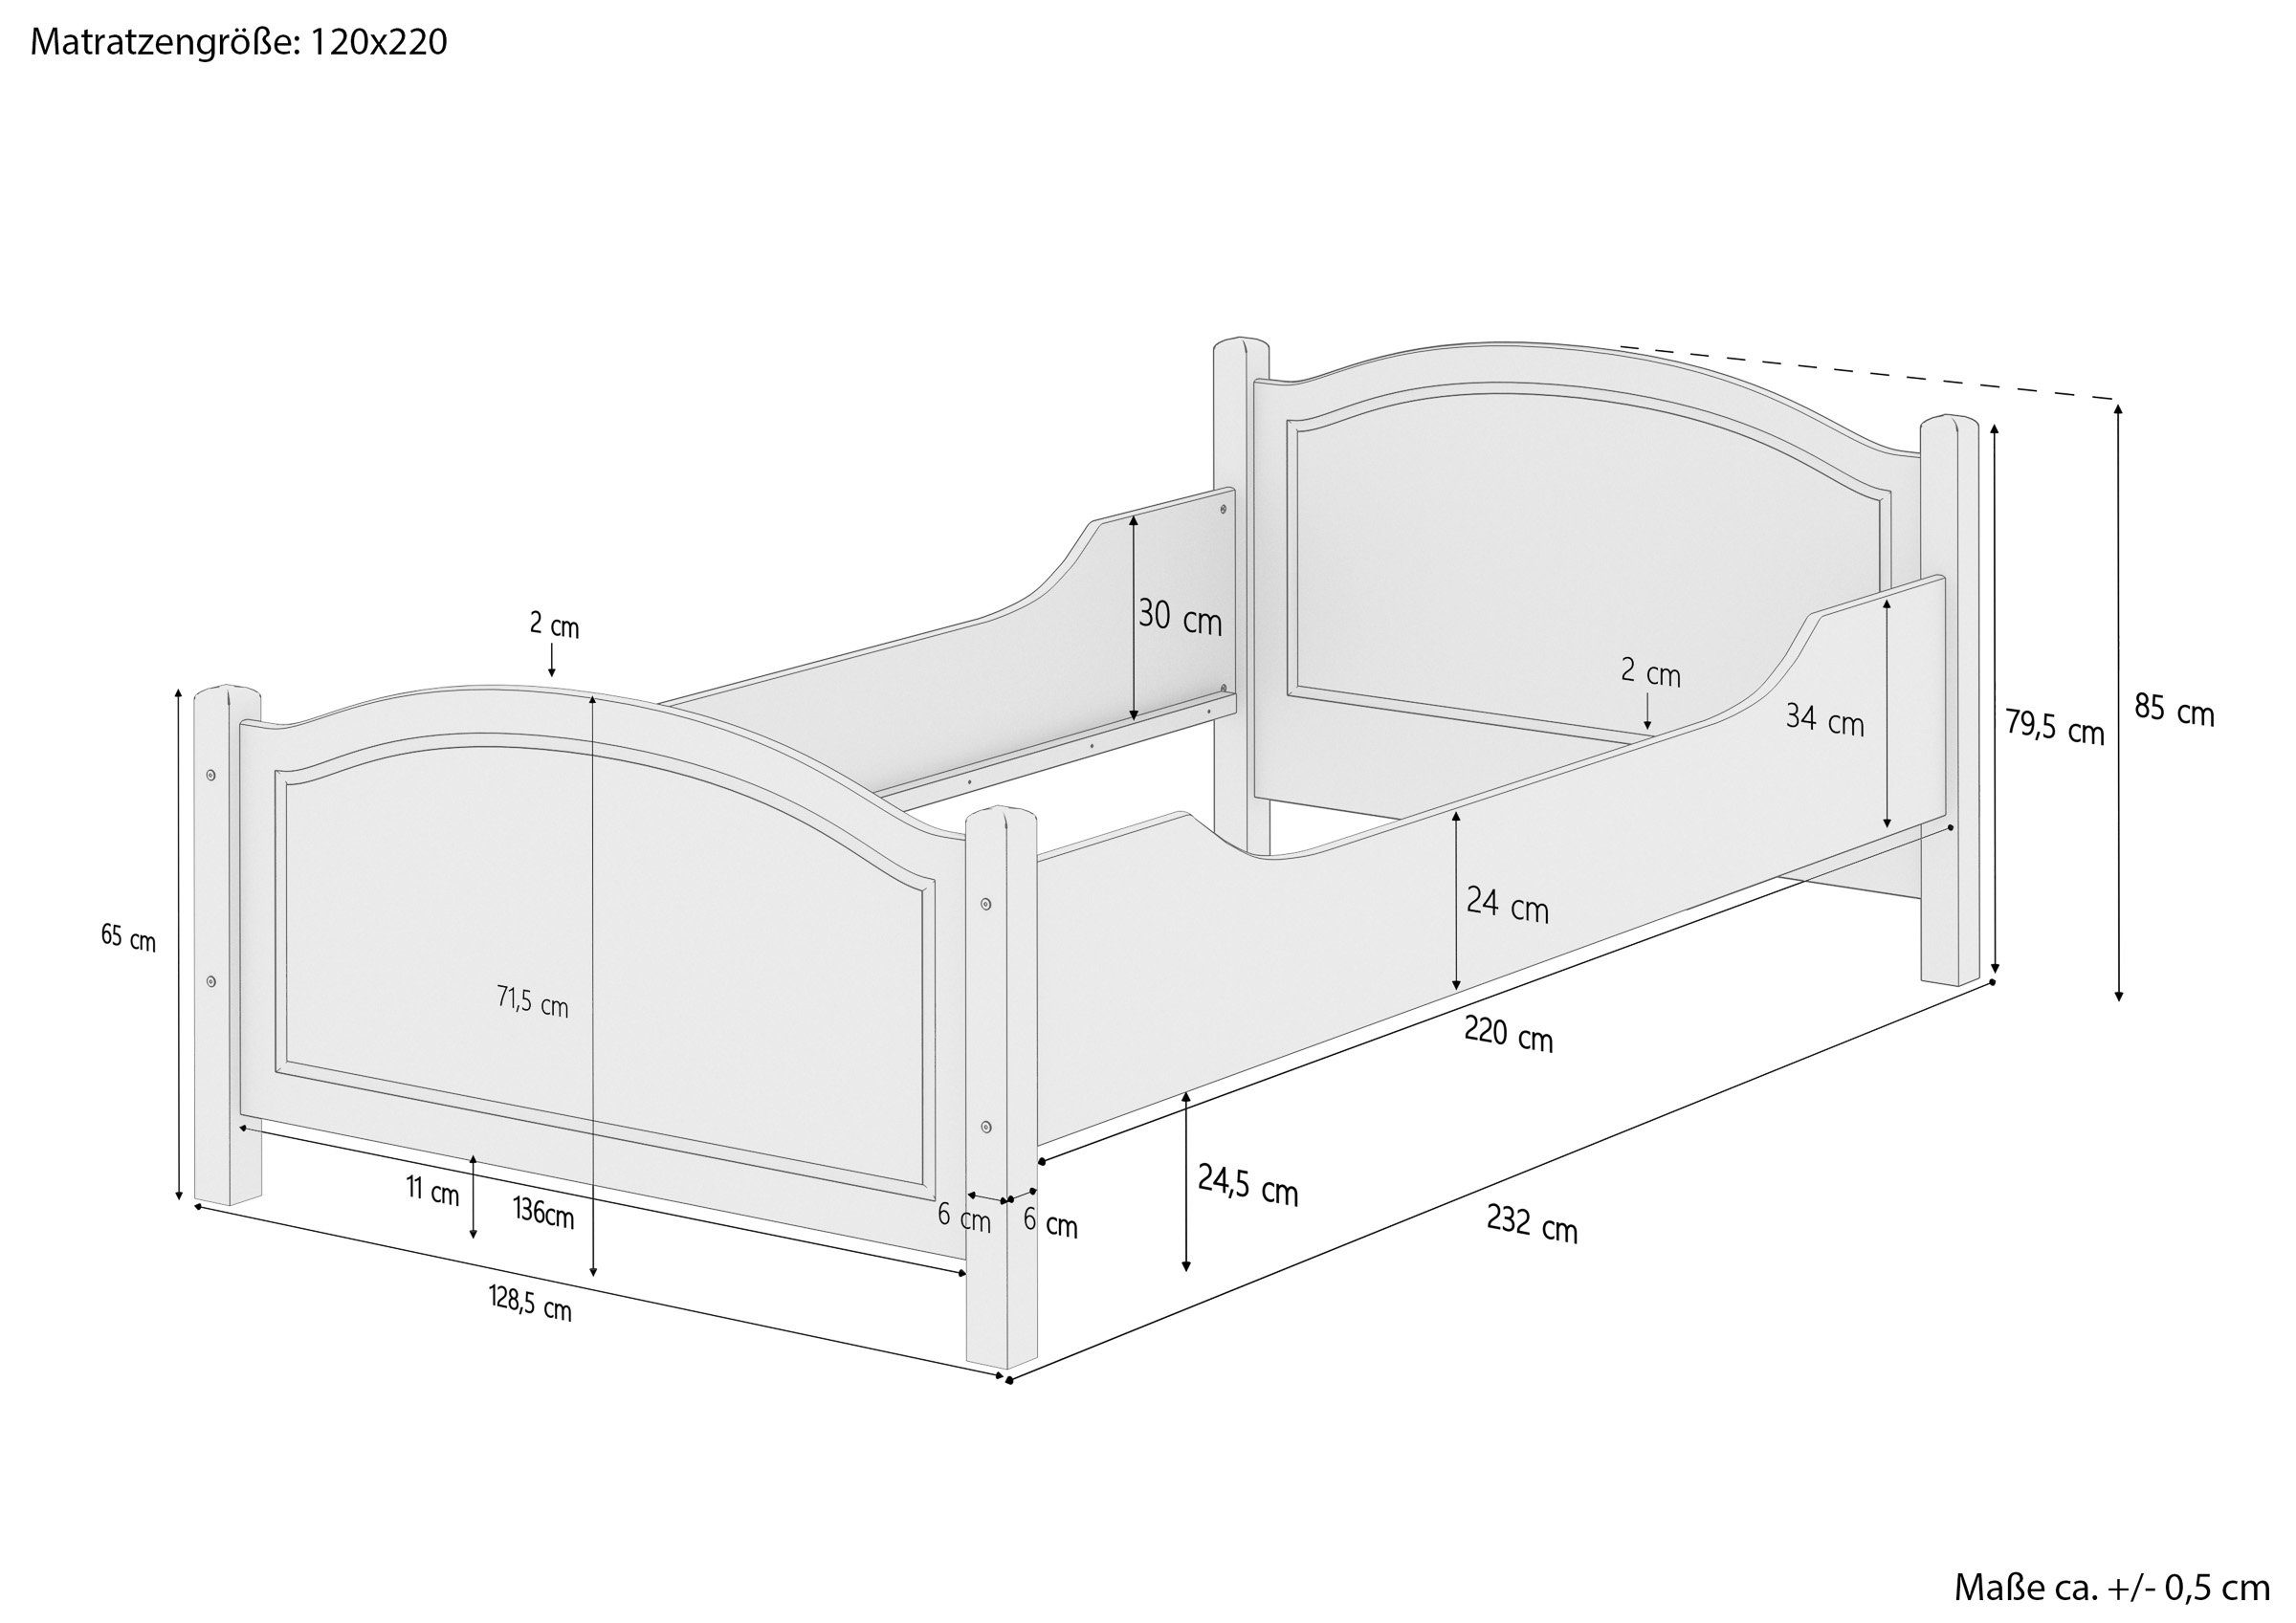 Rost 120x220 Kieferfarblos ERST-HOLZ lackiert Einzelbett Matratze und Kiefer, Seniorenbett mit